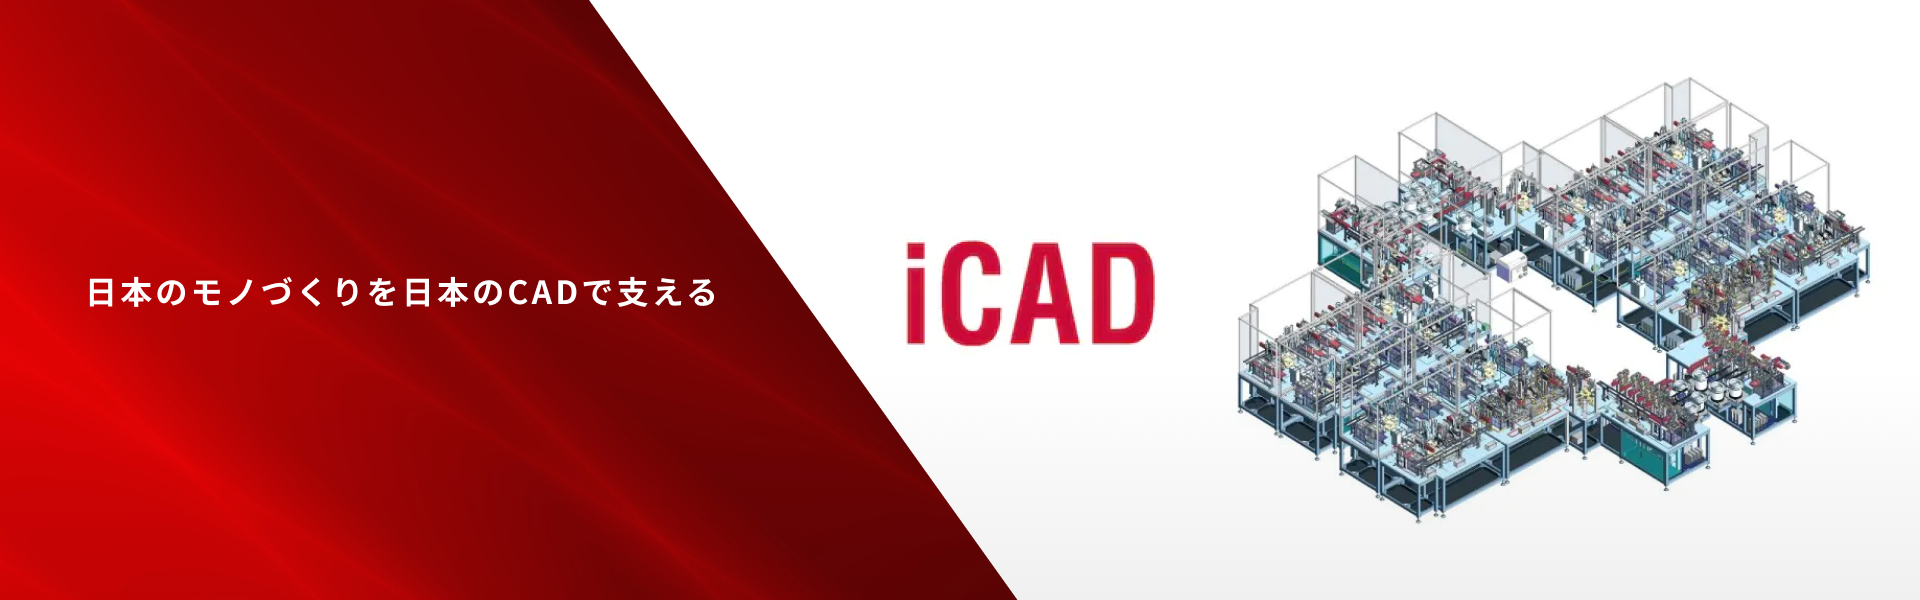 iCAD株式会社